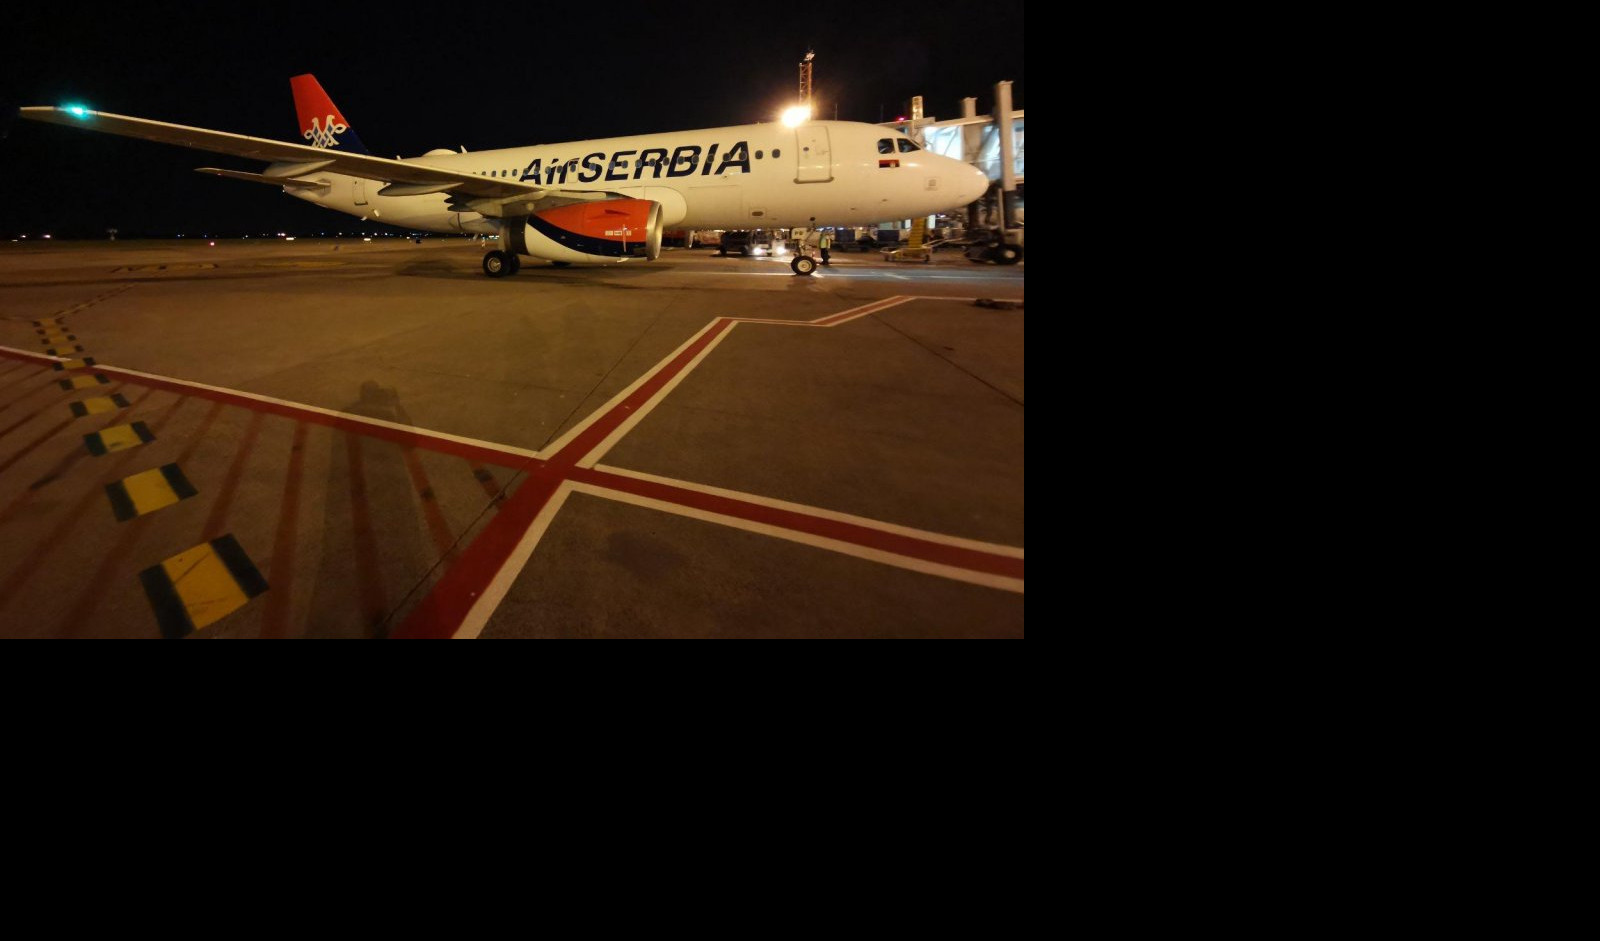 STIGLA POMOĆ IZ NEMAČKE! Avion Er Srbije stigao sa humanitarne misije!